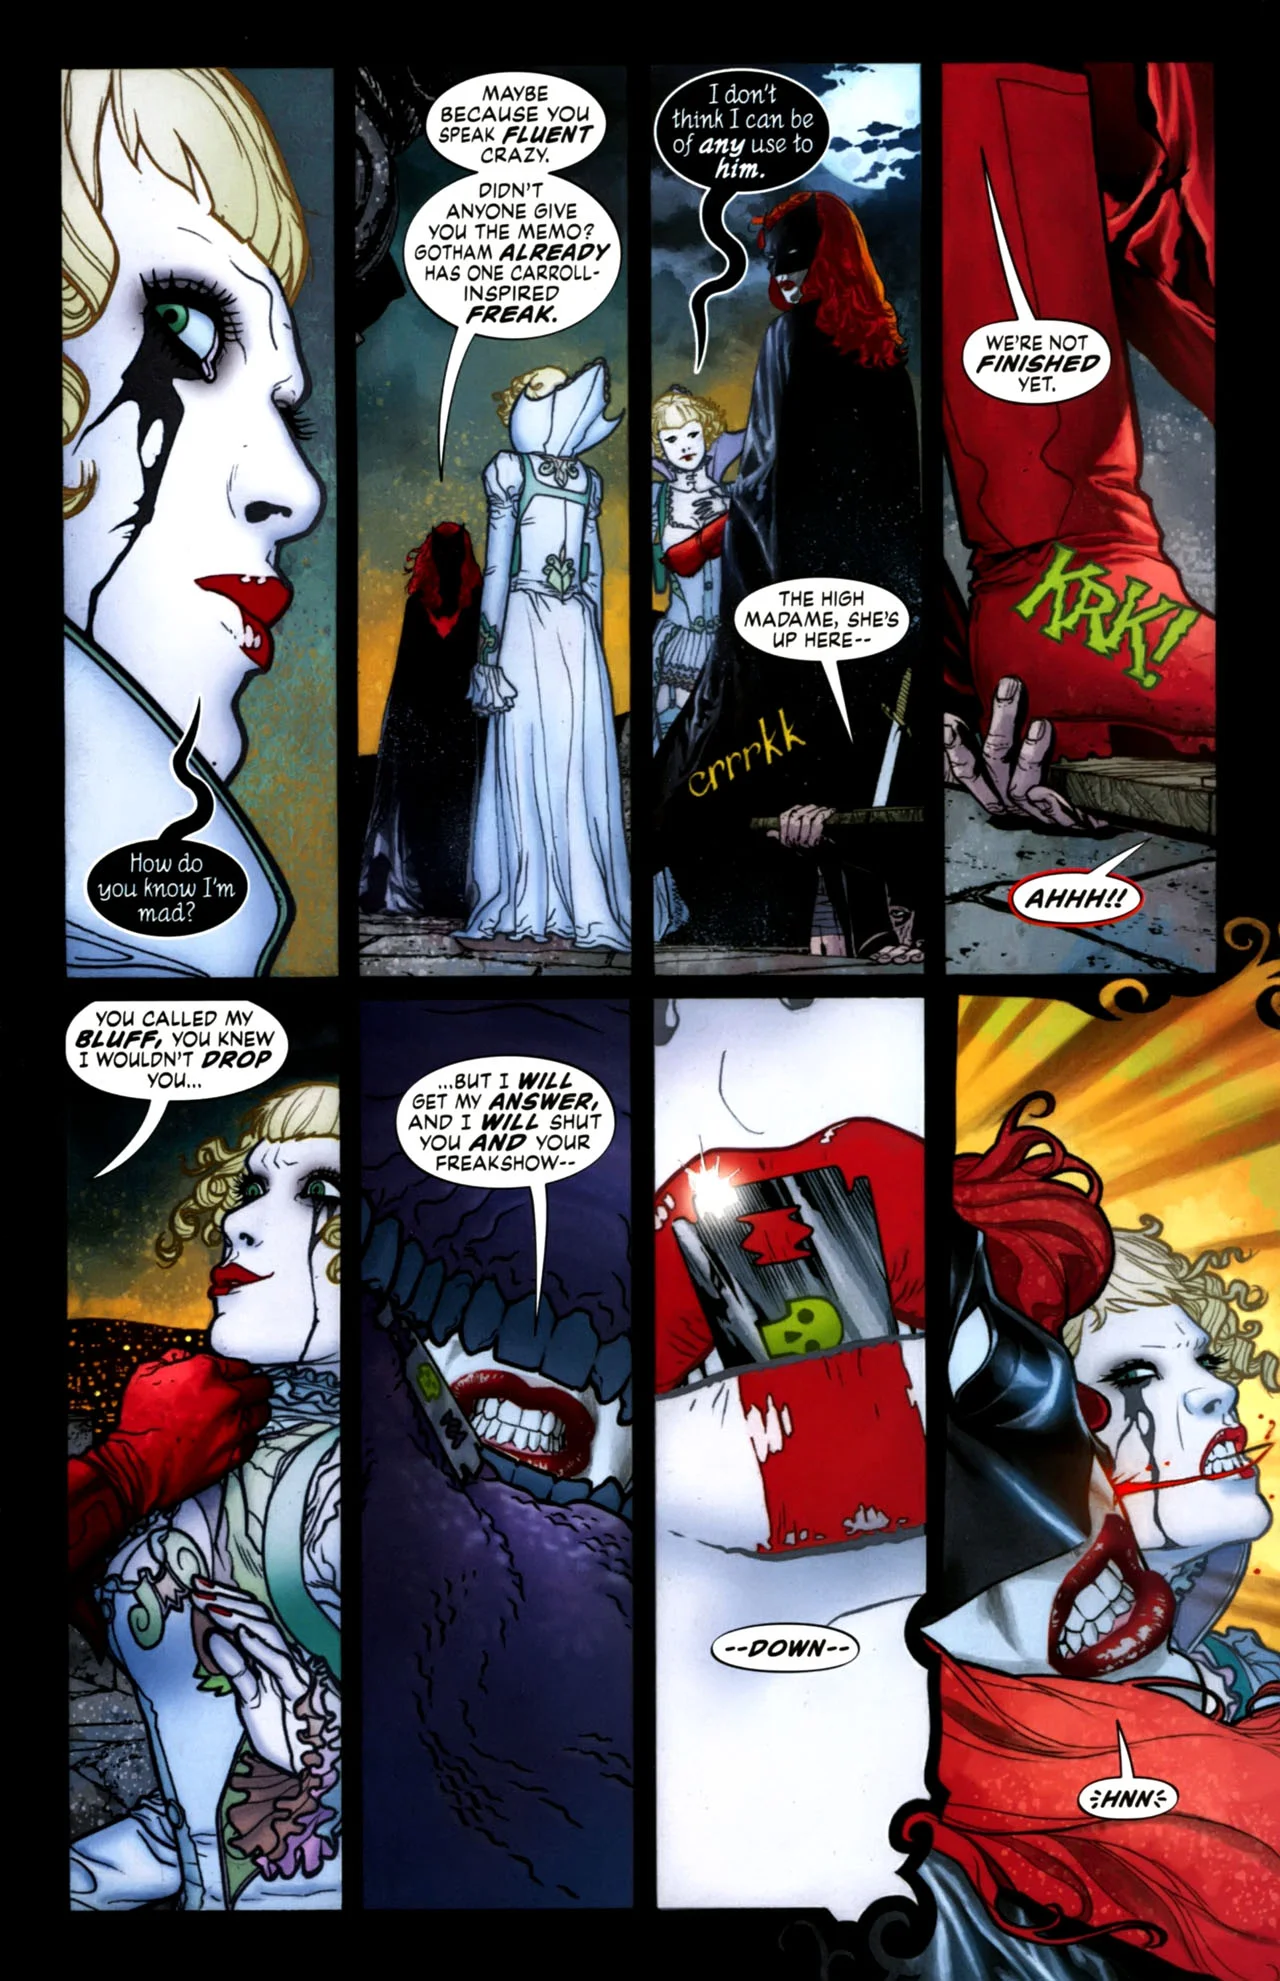 История Бэтвумен: как менялась лесбийская бэт-икона - фото 22